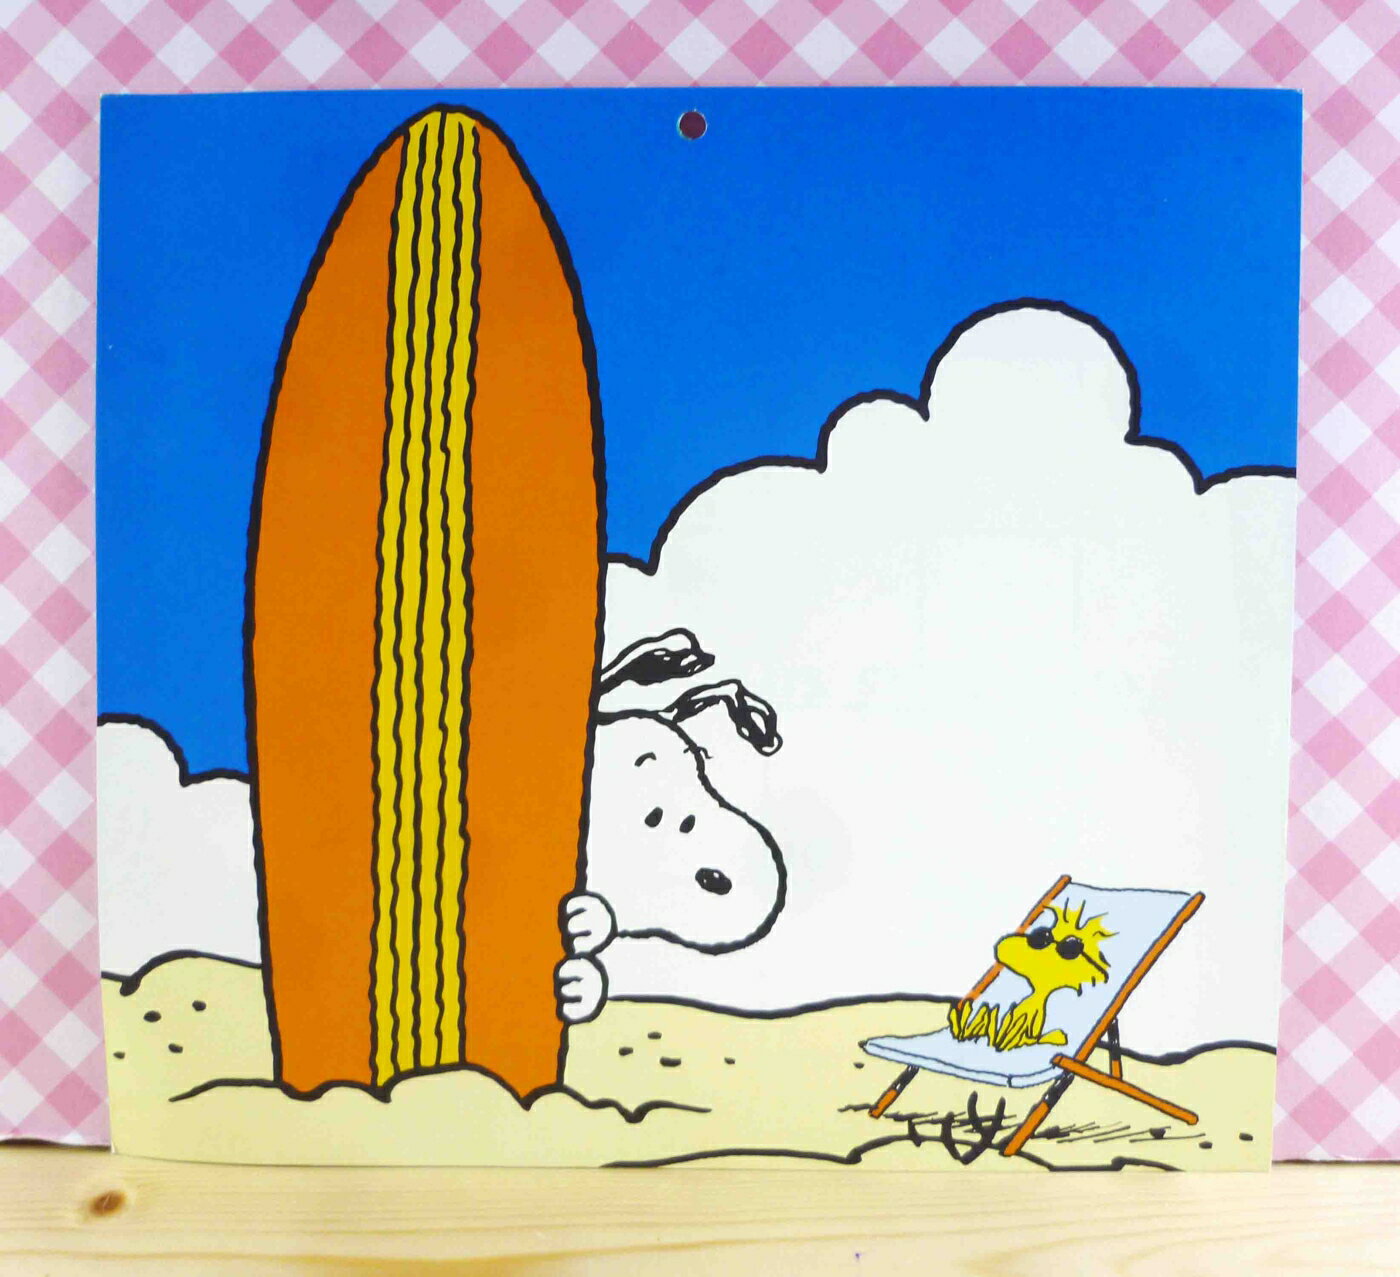 【震撼精品百貨】史奴比Peanuts Snoopy 卡片 藍滑板 震撼日式精品百貨